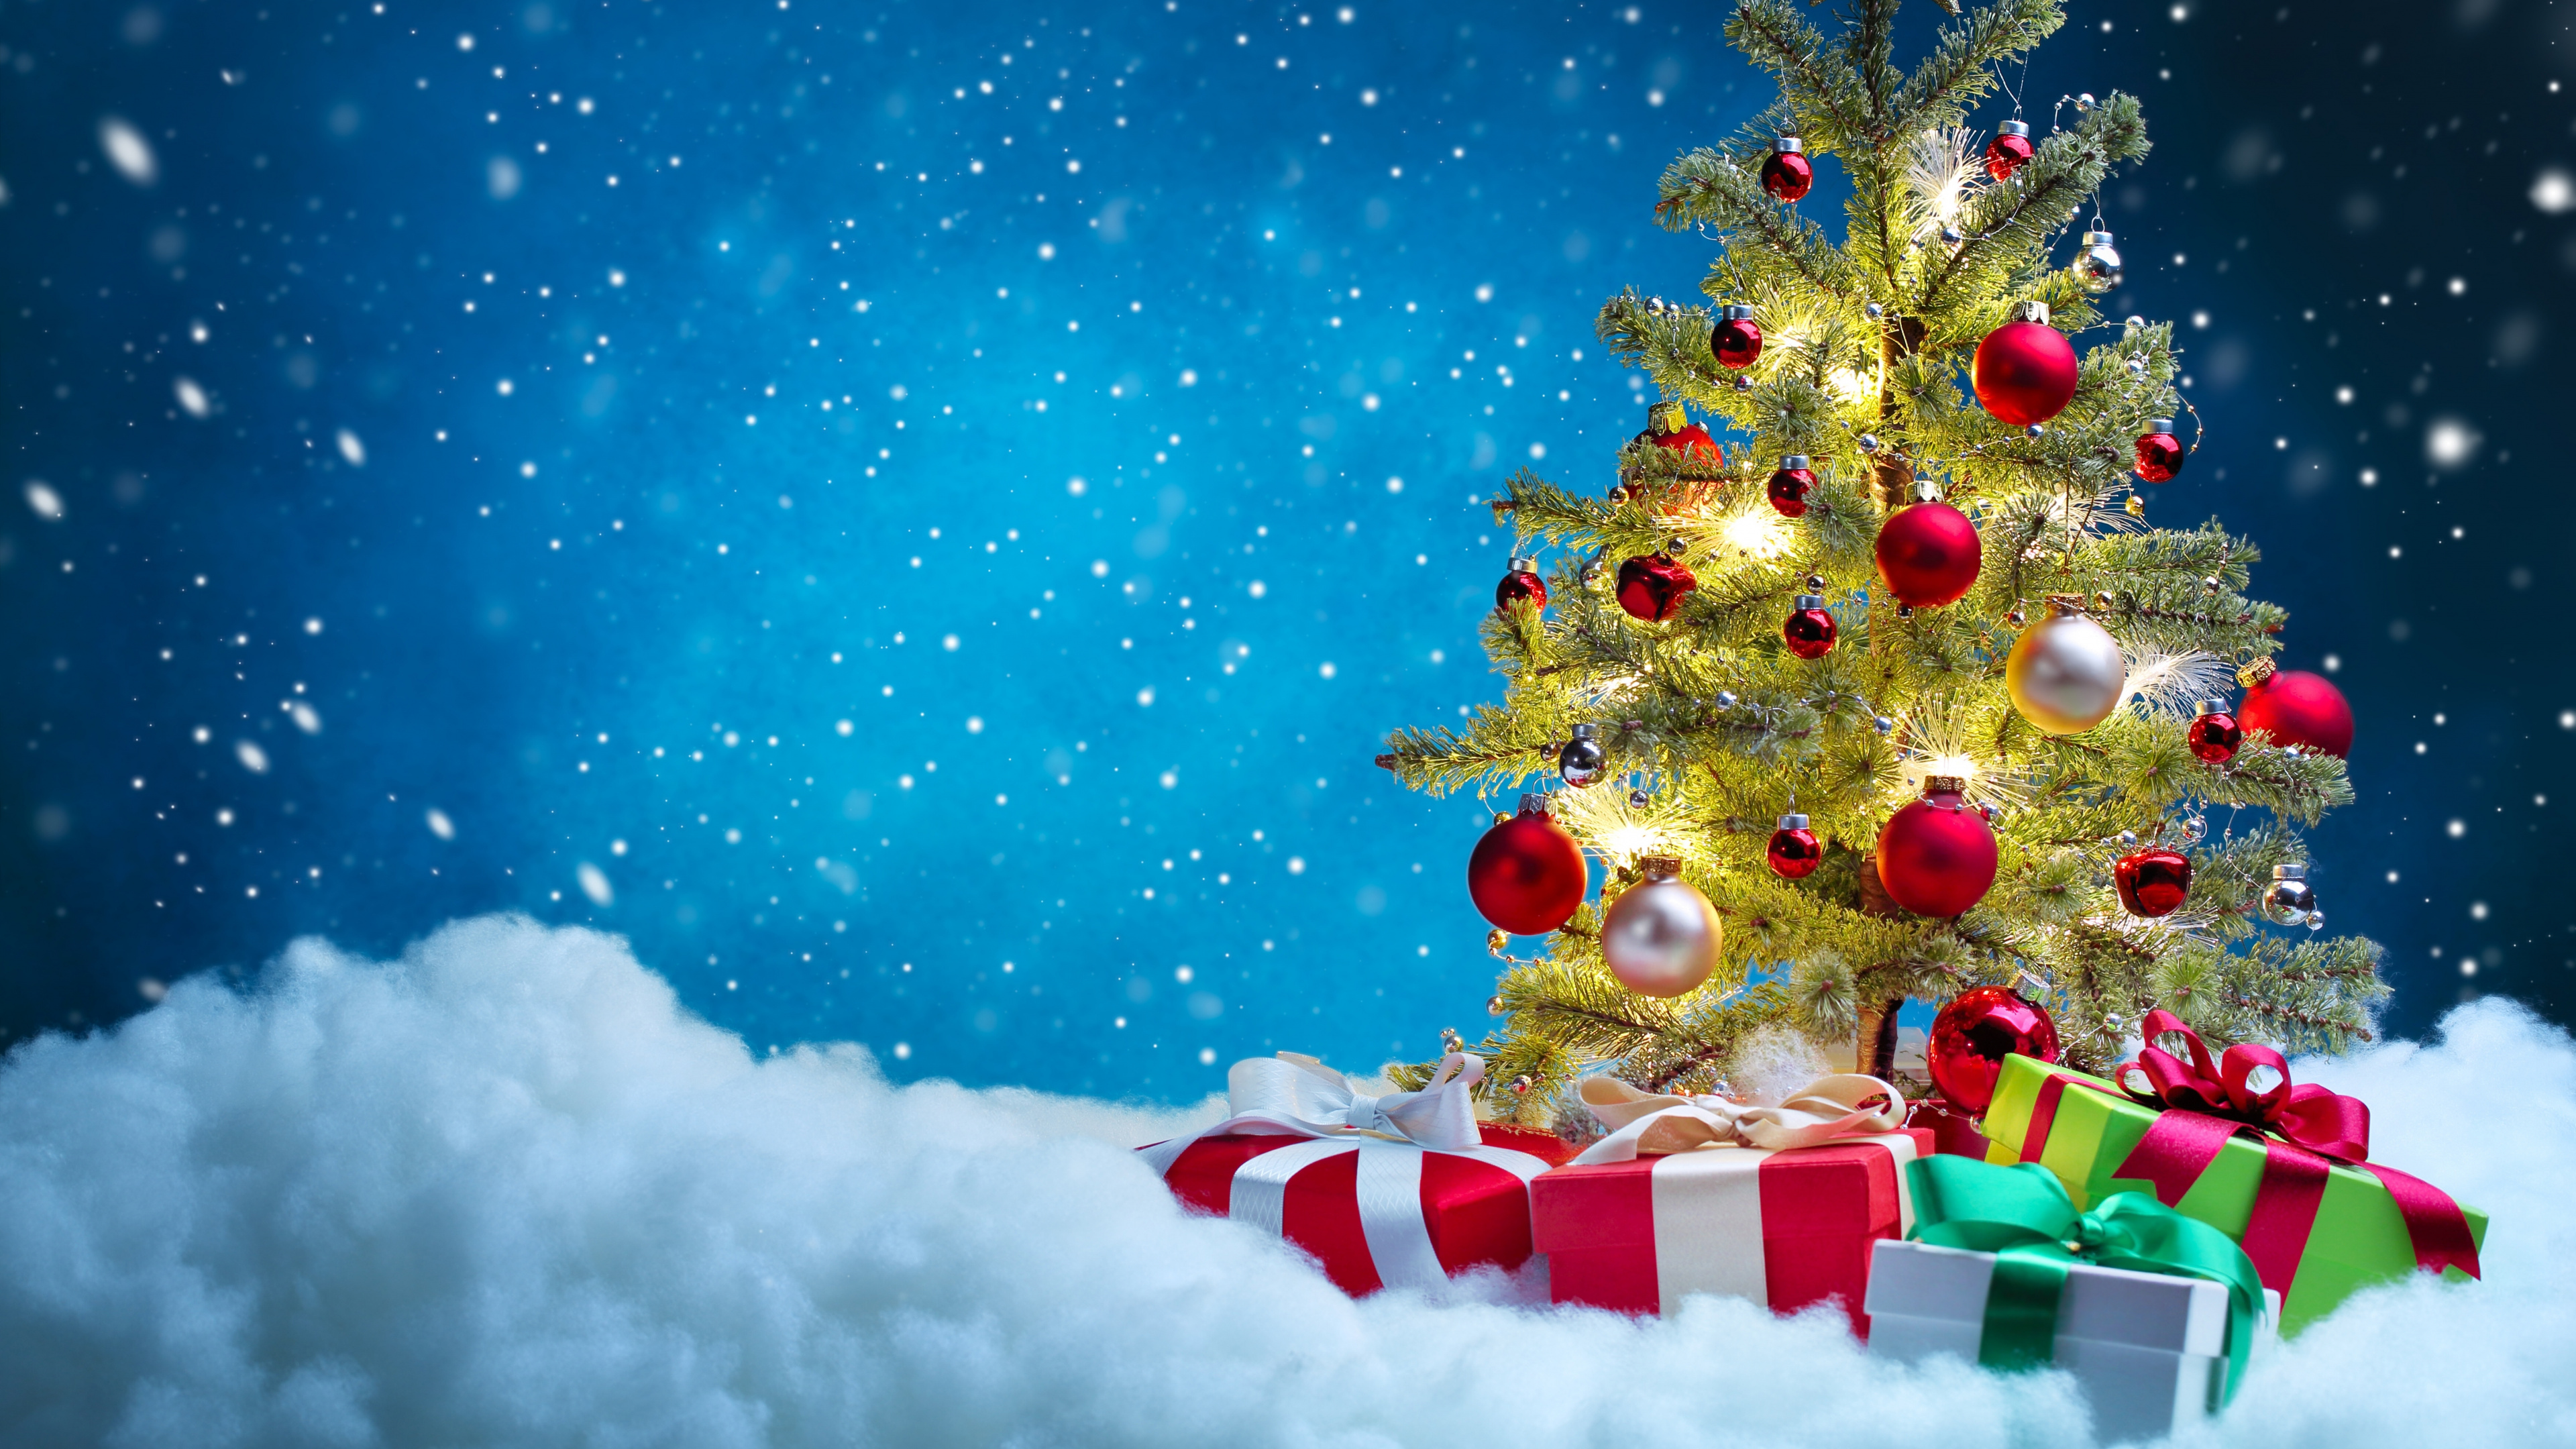 圣诞树, 圣诞节, 圣诞装饰, 圣诞前夕, 圣诞节的装饰品 壁纸 3840x2160 允许